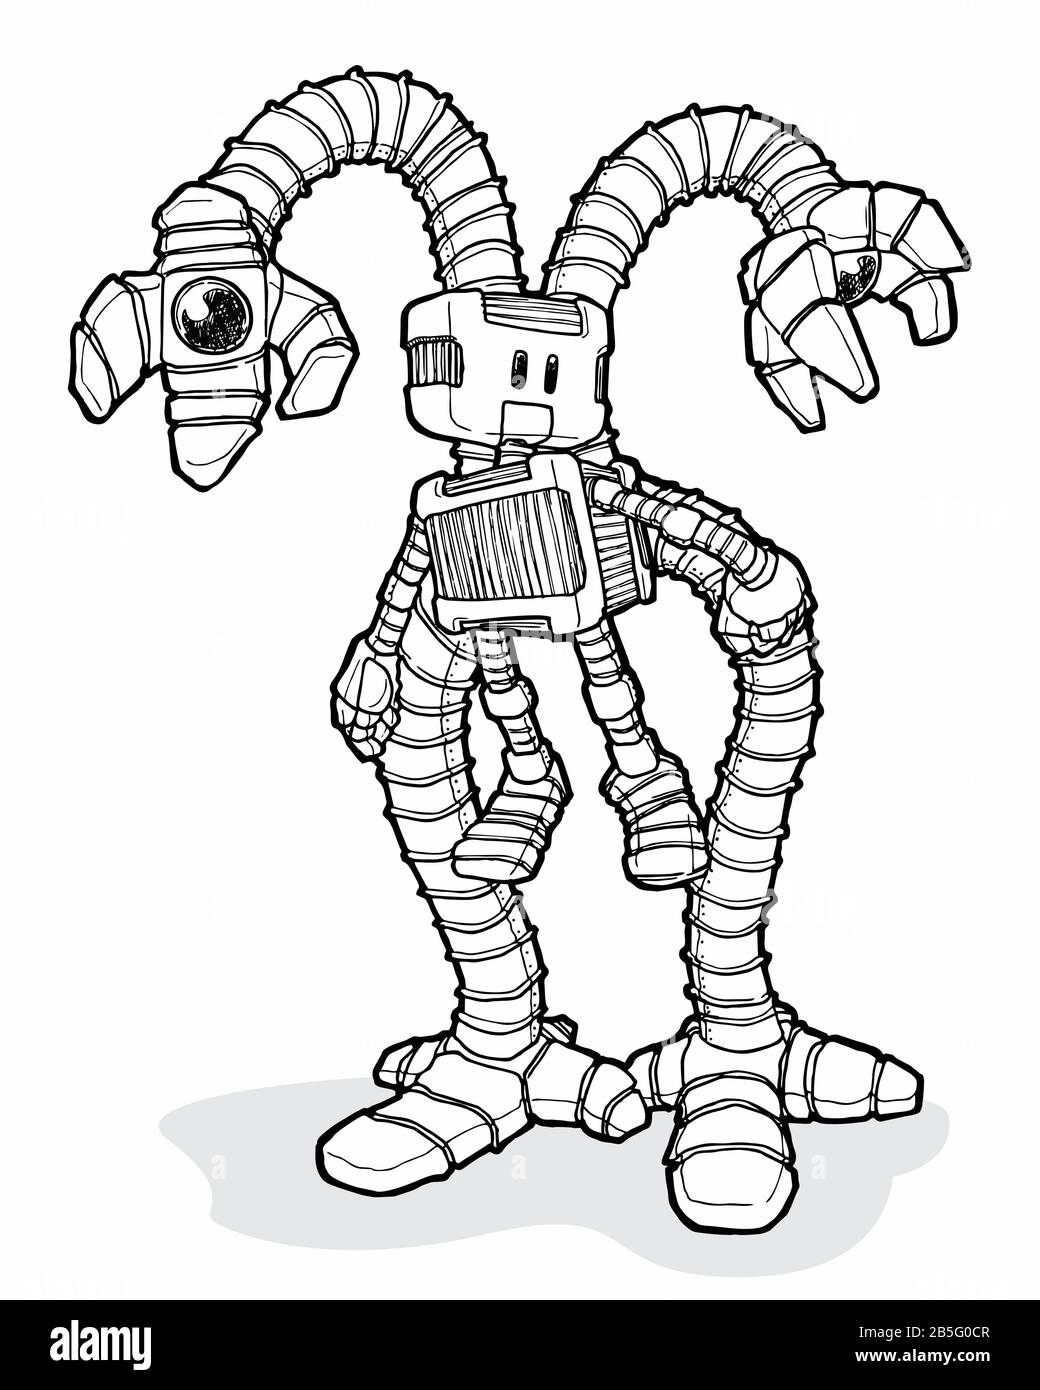 Farbzeichnung des Roboters mit langen Zusatzarmen. Künstlerische Darstellung im Cartoon Style Manuelle Darstellung wurde zu Vector. Technologie, Robotik, Künstliche Intelligenz. Stock Vektor